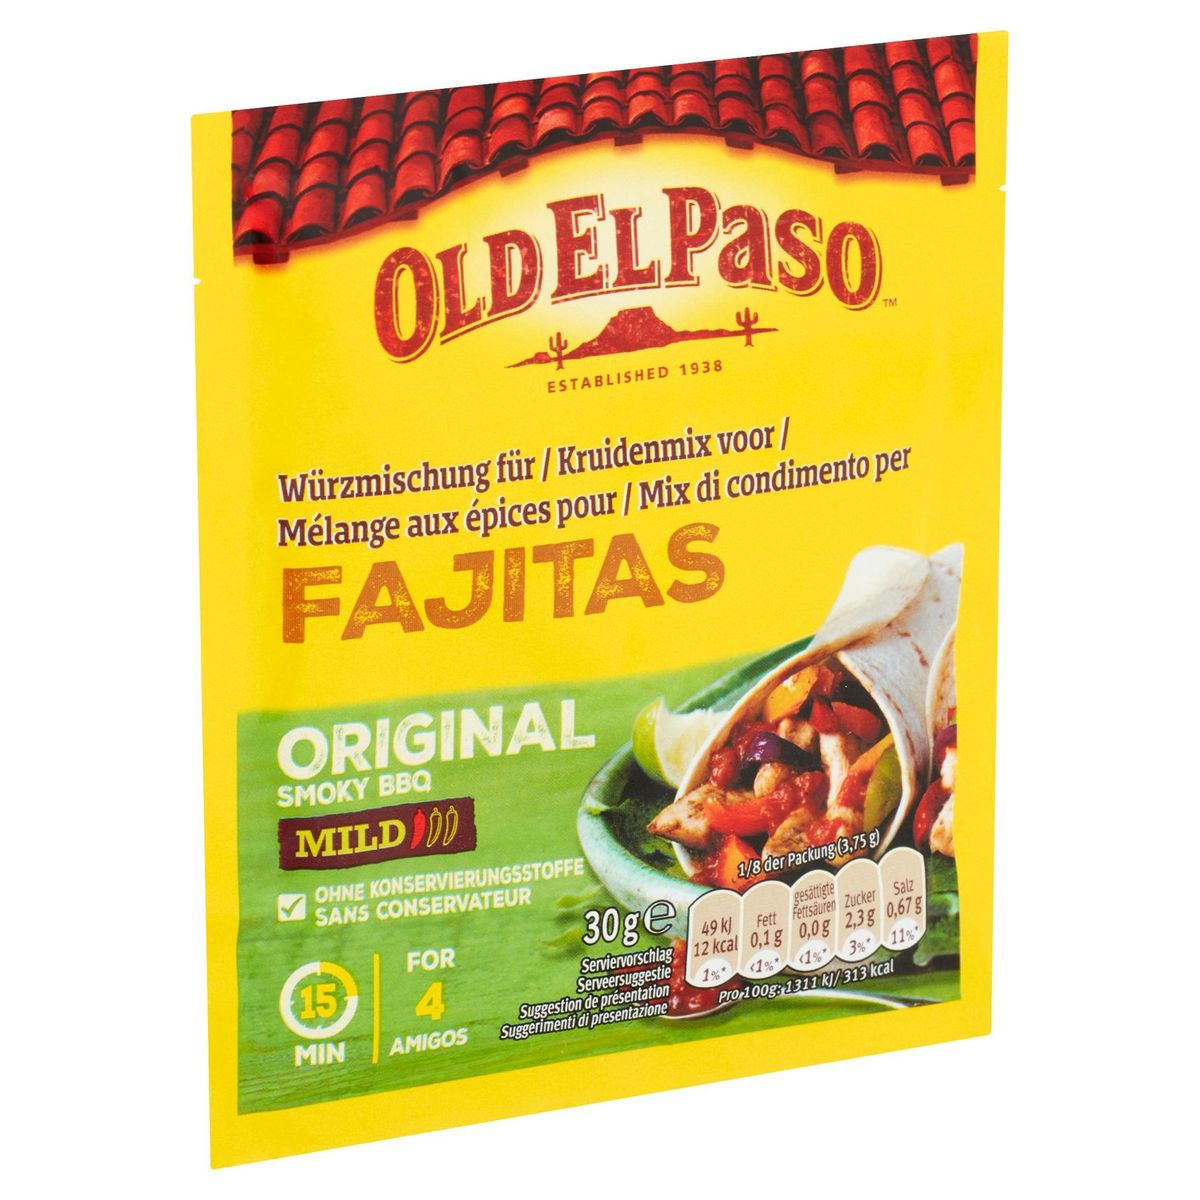 Old El Paso Mélange aux Épices pour Fajitas Original Smoky BBQ 30g